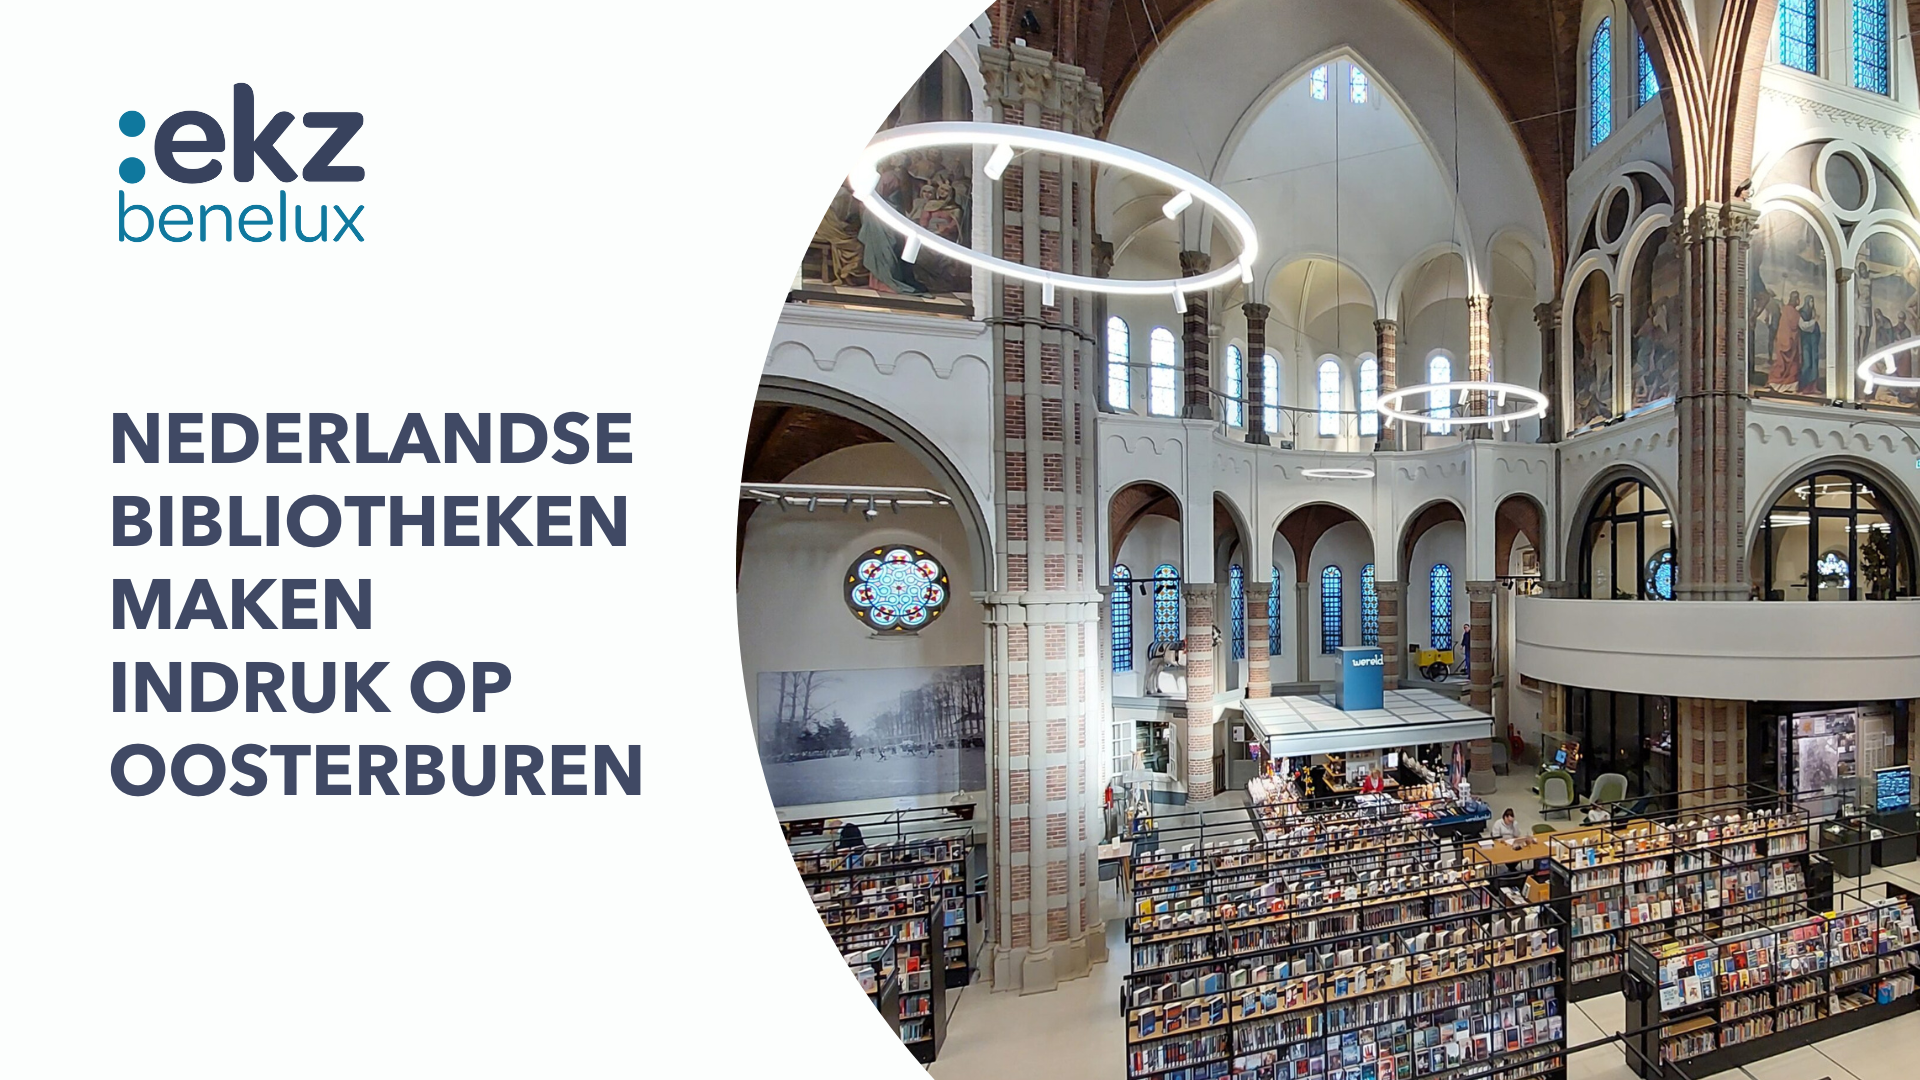 Nederlandse bibliotheken maken indruk op oosterburen - ekz benelux